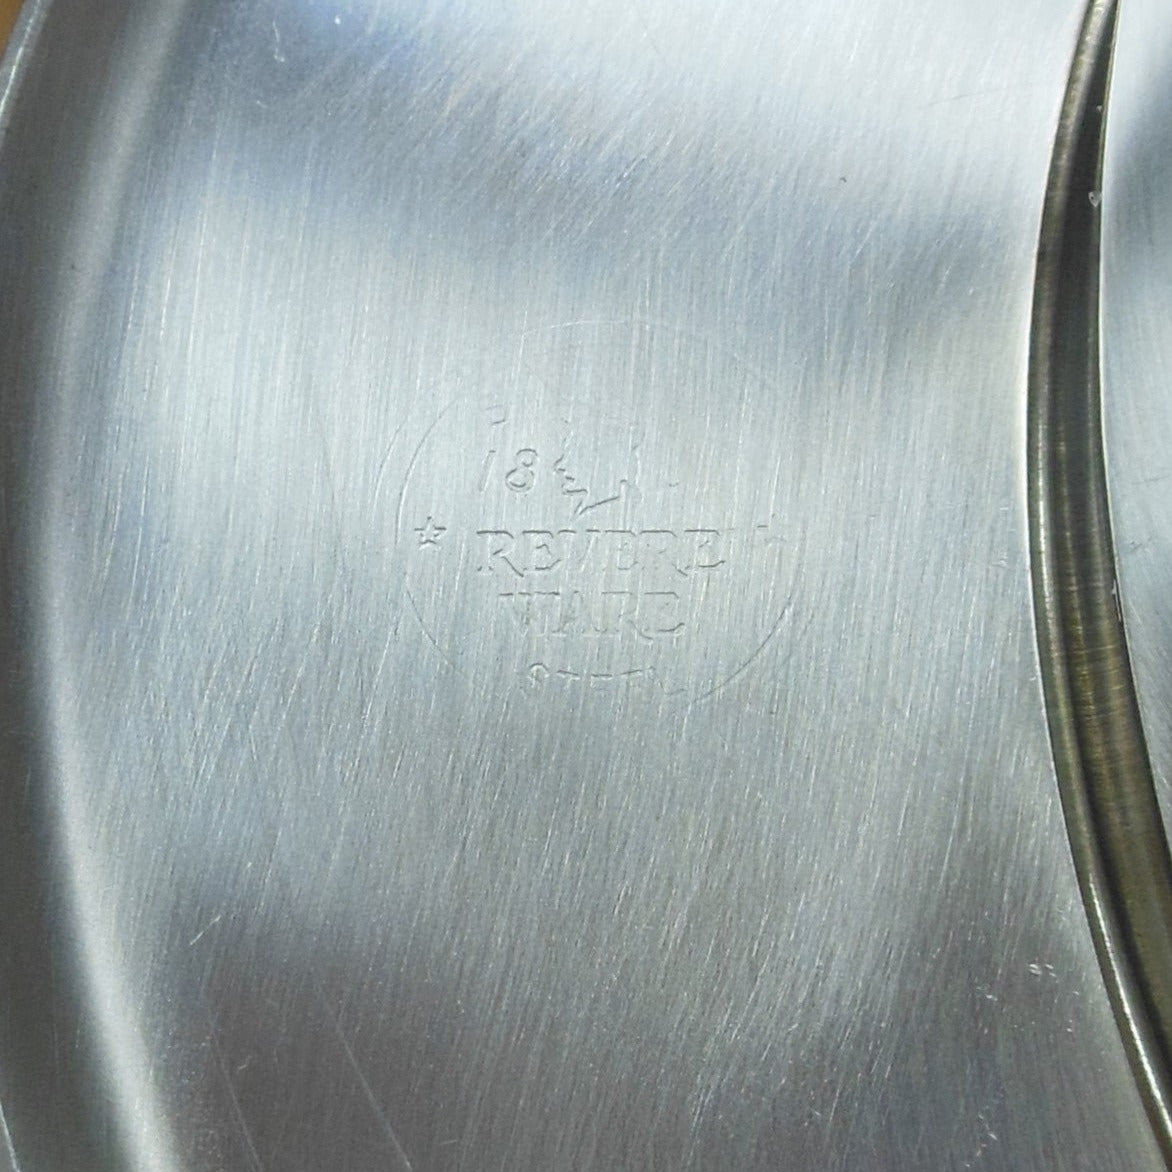 Revere Ware 1950's Stainless Steel Oval Roaster Pot & Lid 4 Quart maker Mark Logo